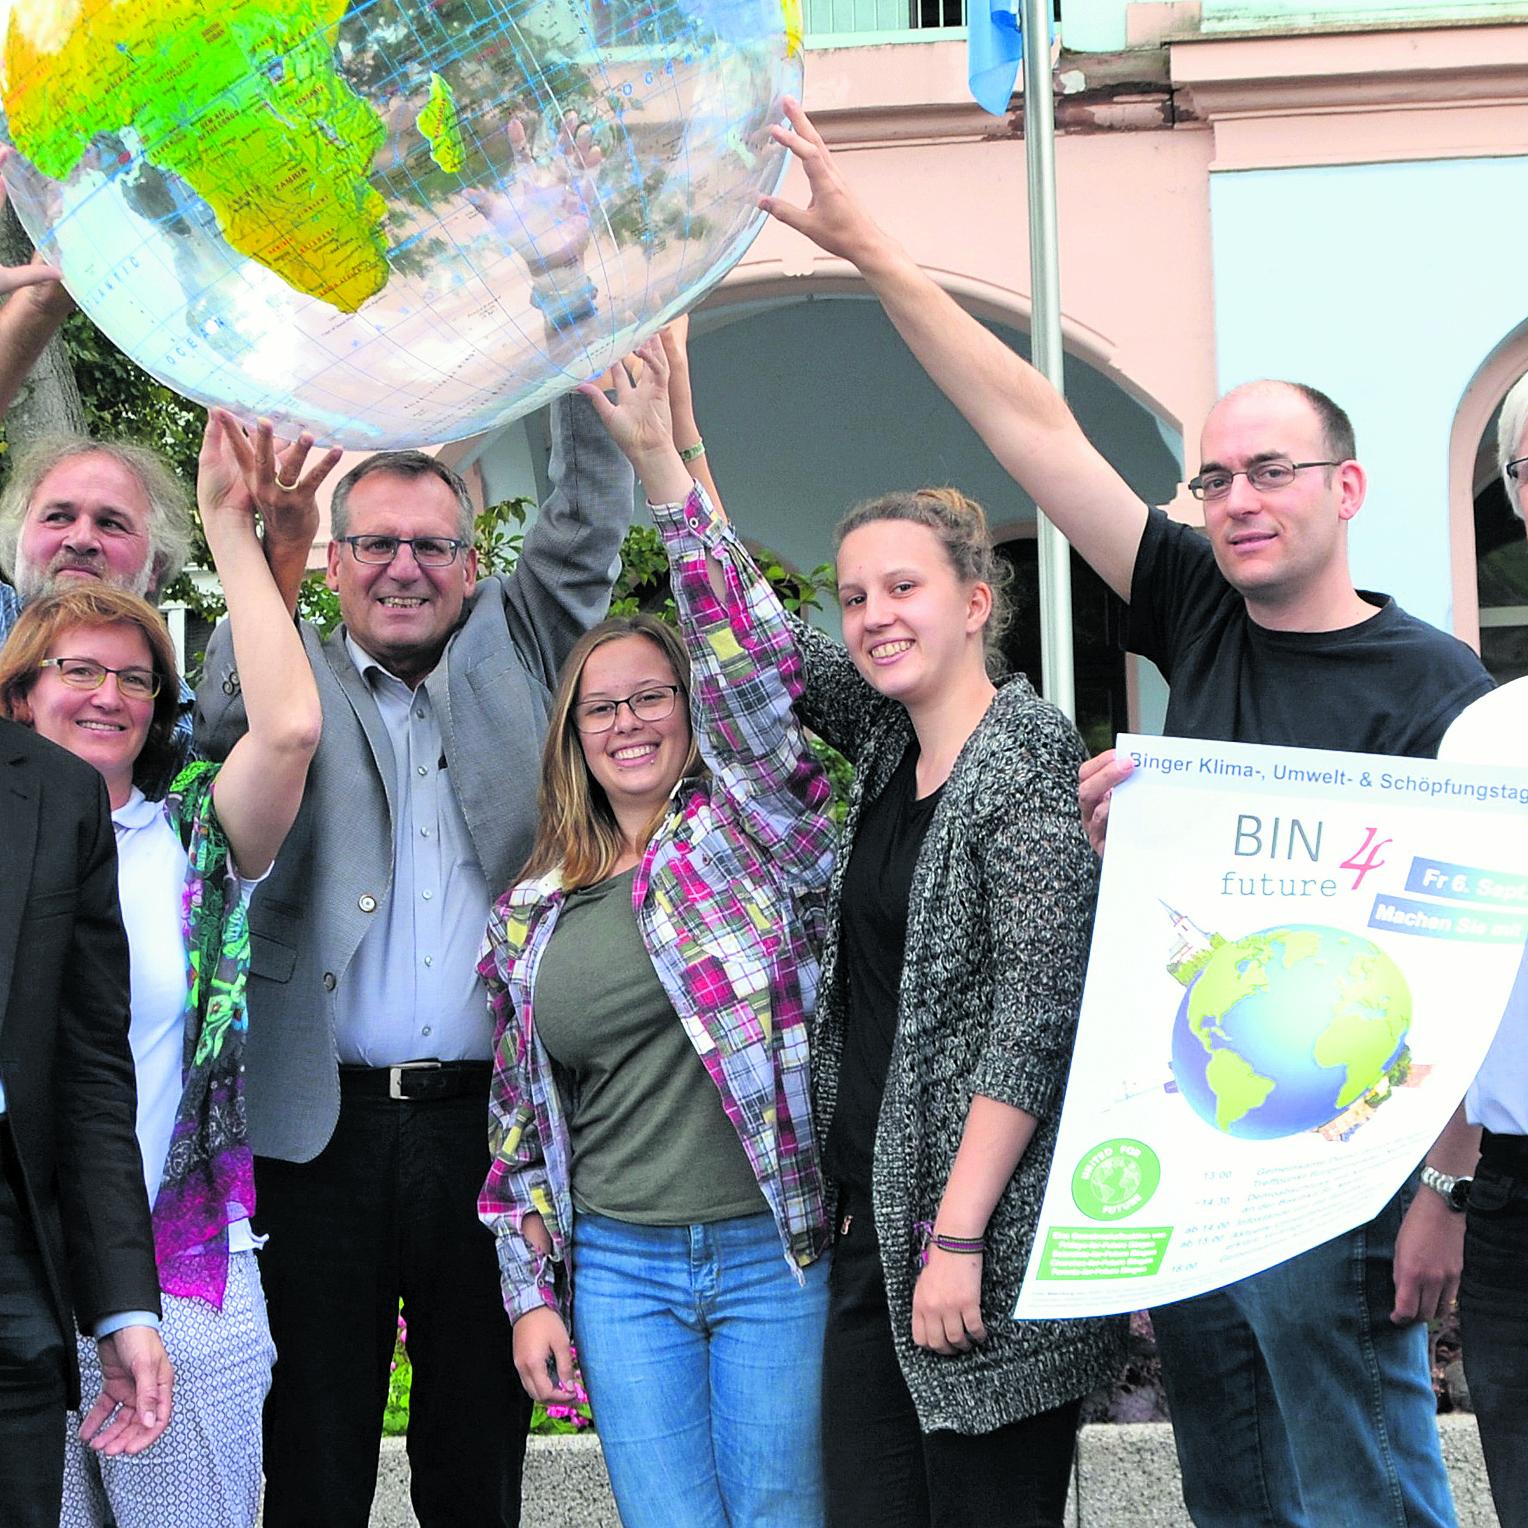 Die Organisatoren des ersten Binger Klima-, Umwelt- & Schöpfungstags, darunter Pfarrer Markus Lerchl